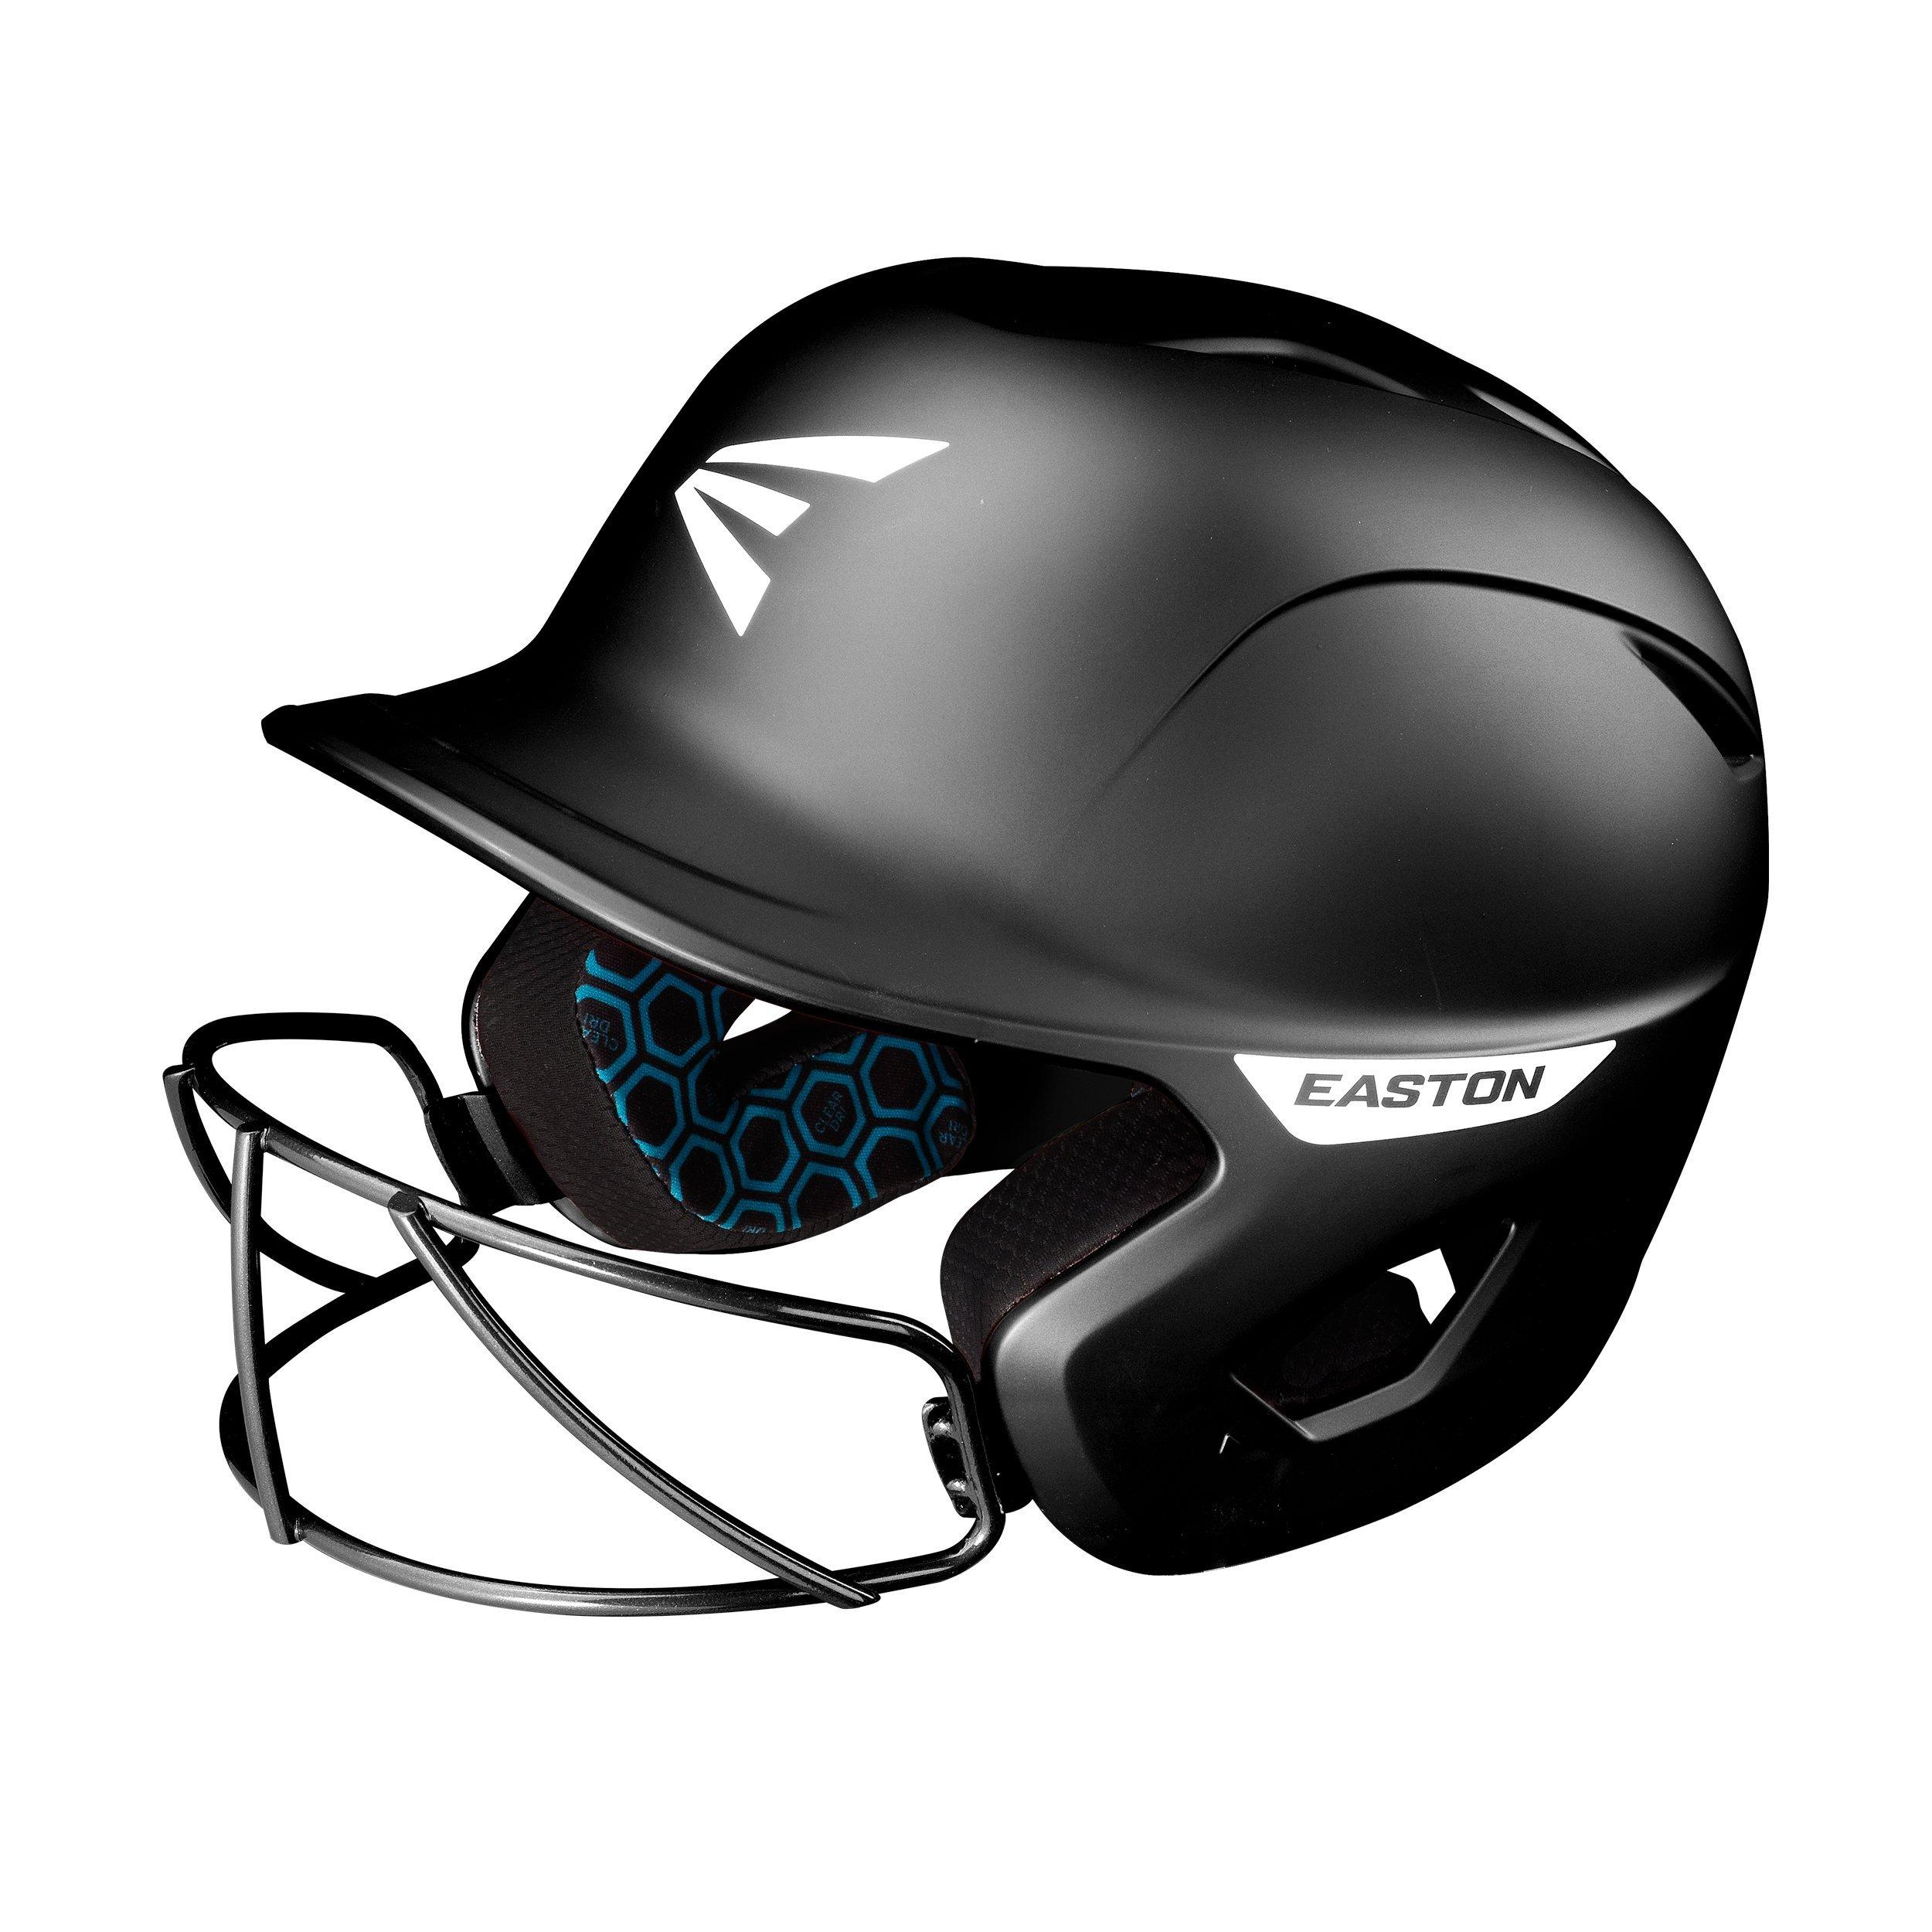 Free Free Baseball Helmet Svg 91 SVG PNG EPS DXF File